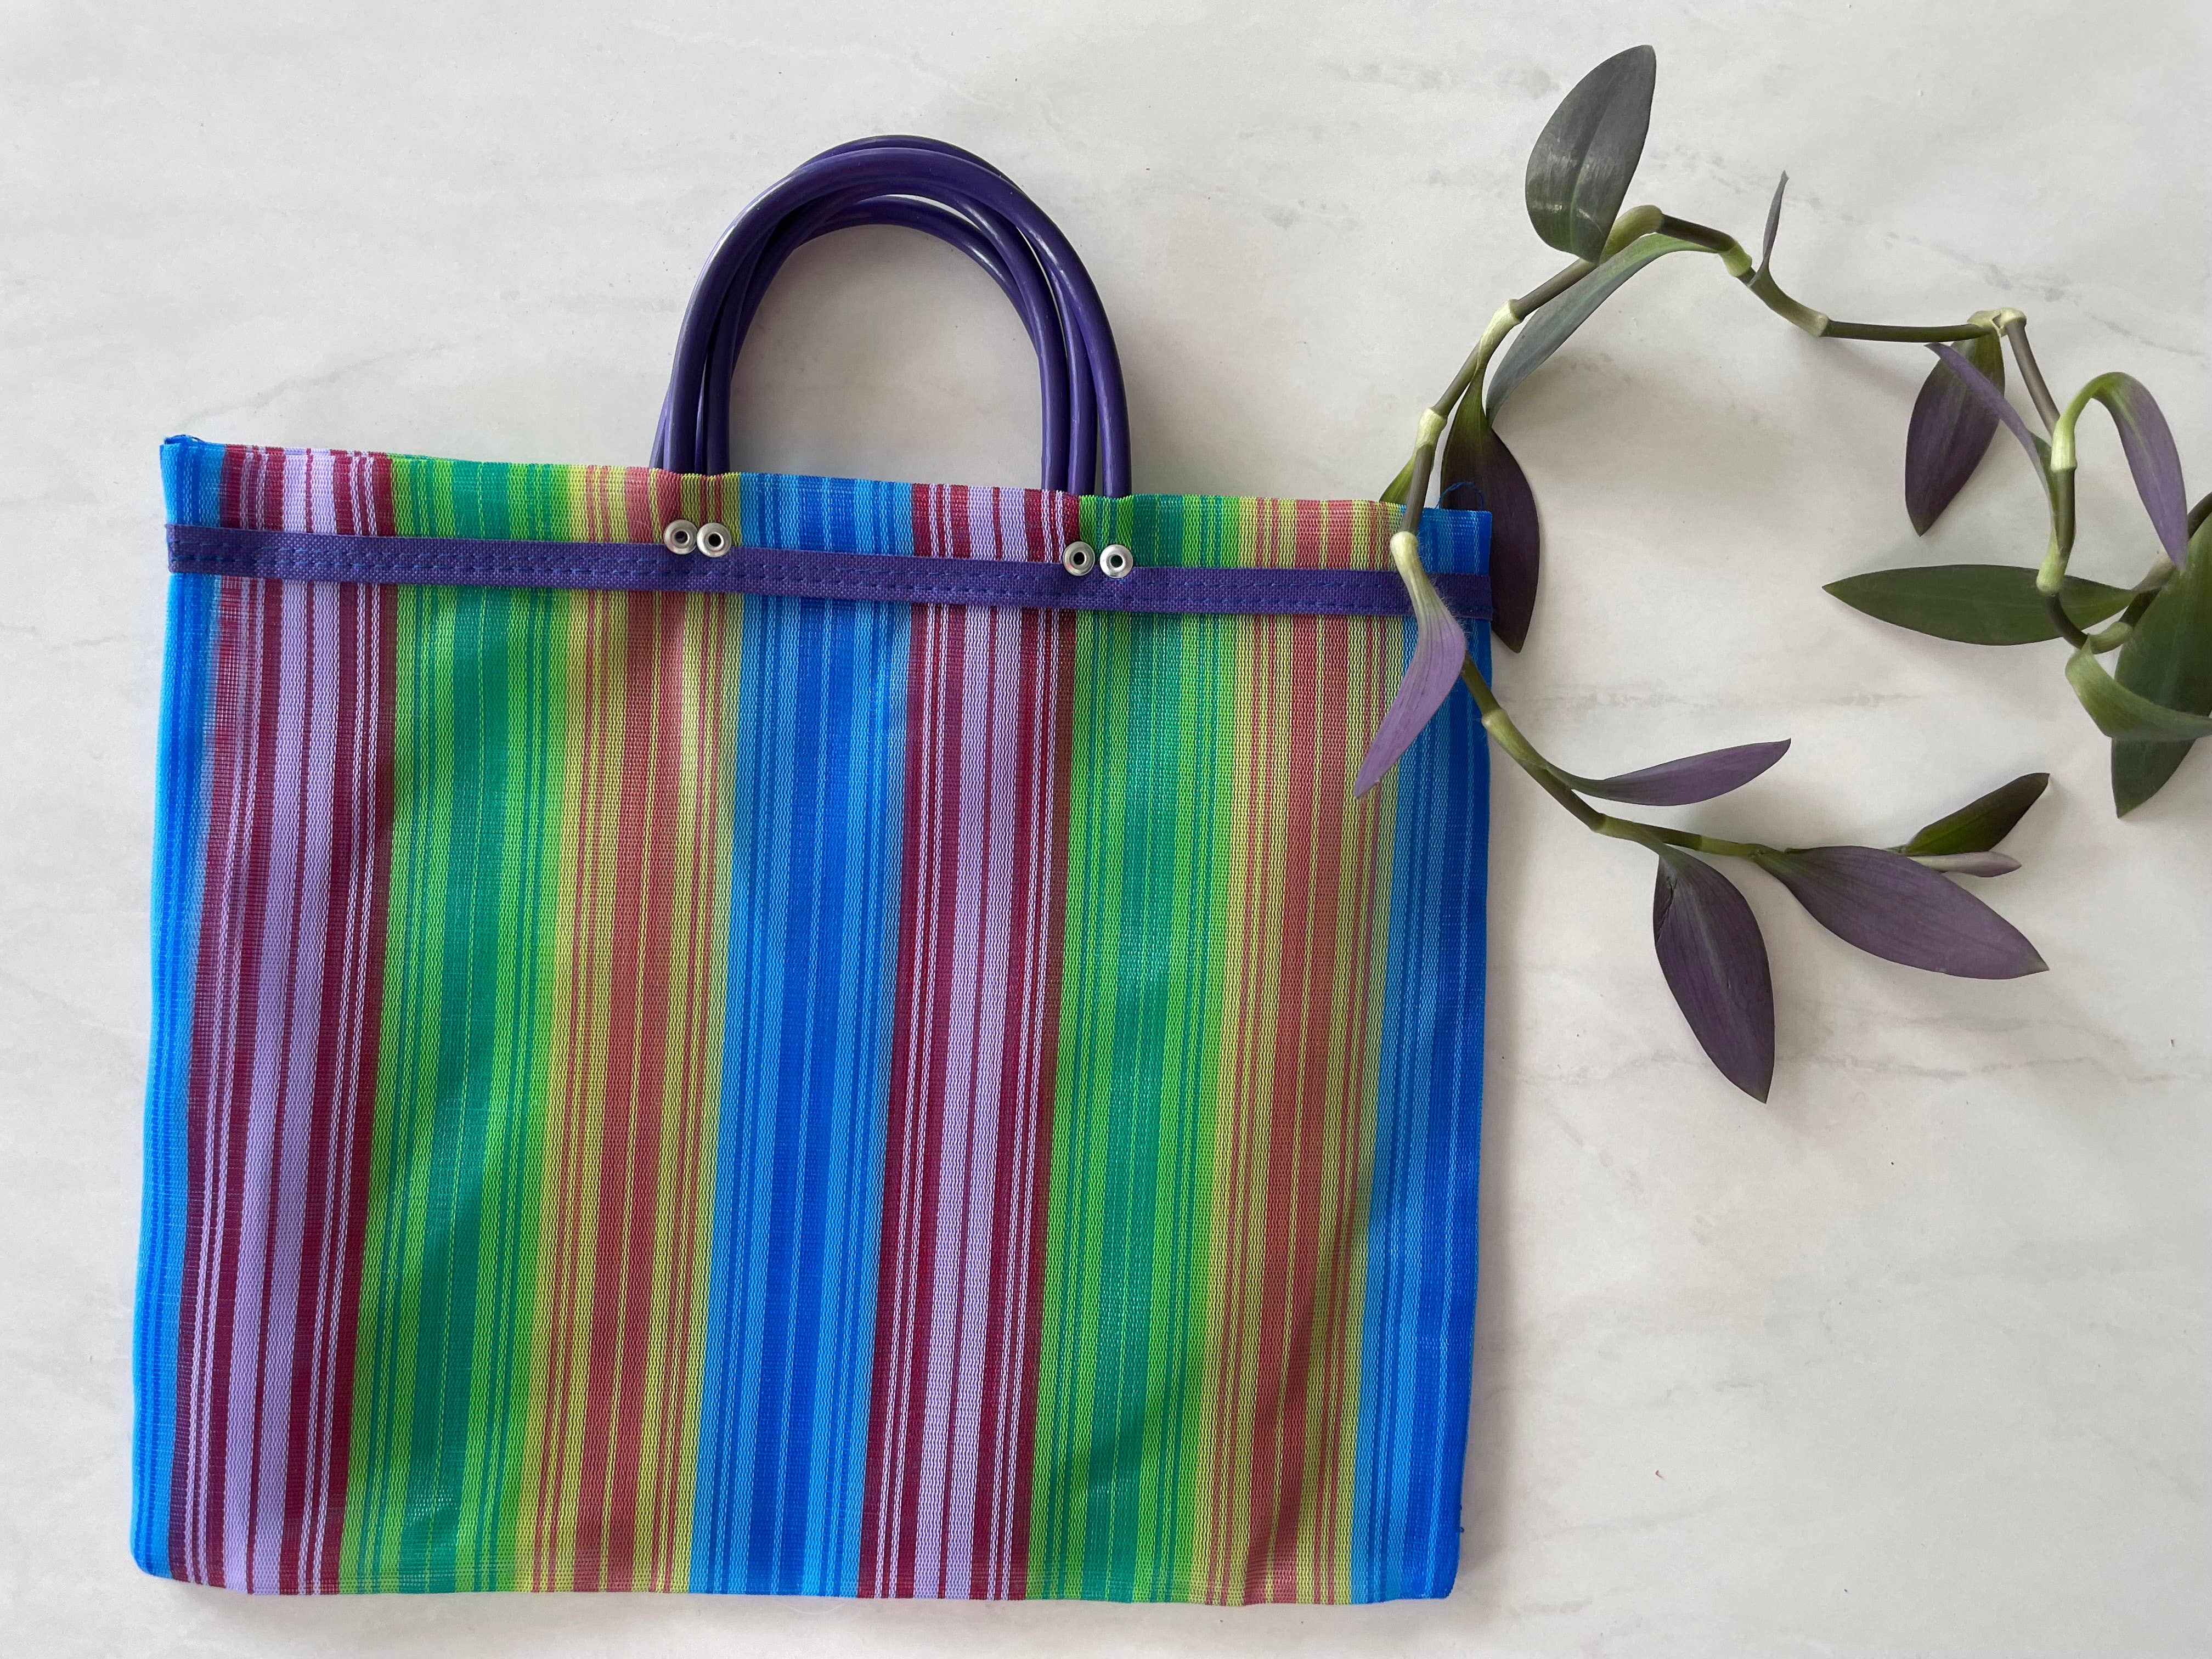 Mexican Market Mesh Bag Rausable Tote Bolsa De Mercado 17” Purple Multicolor 